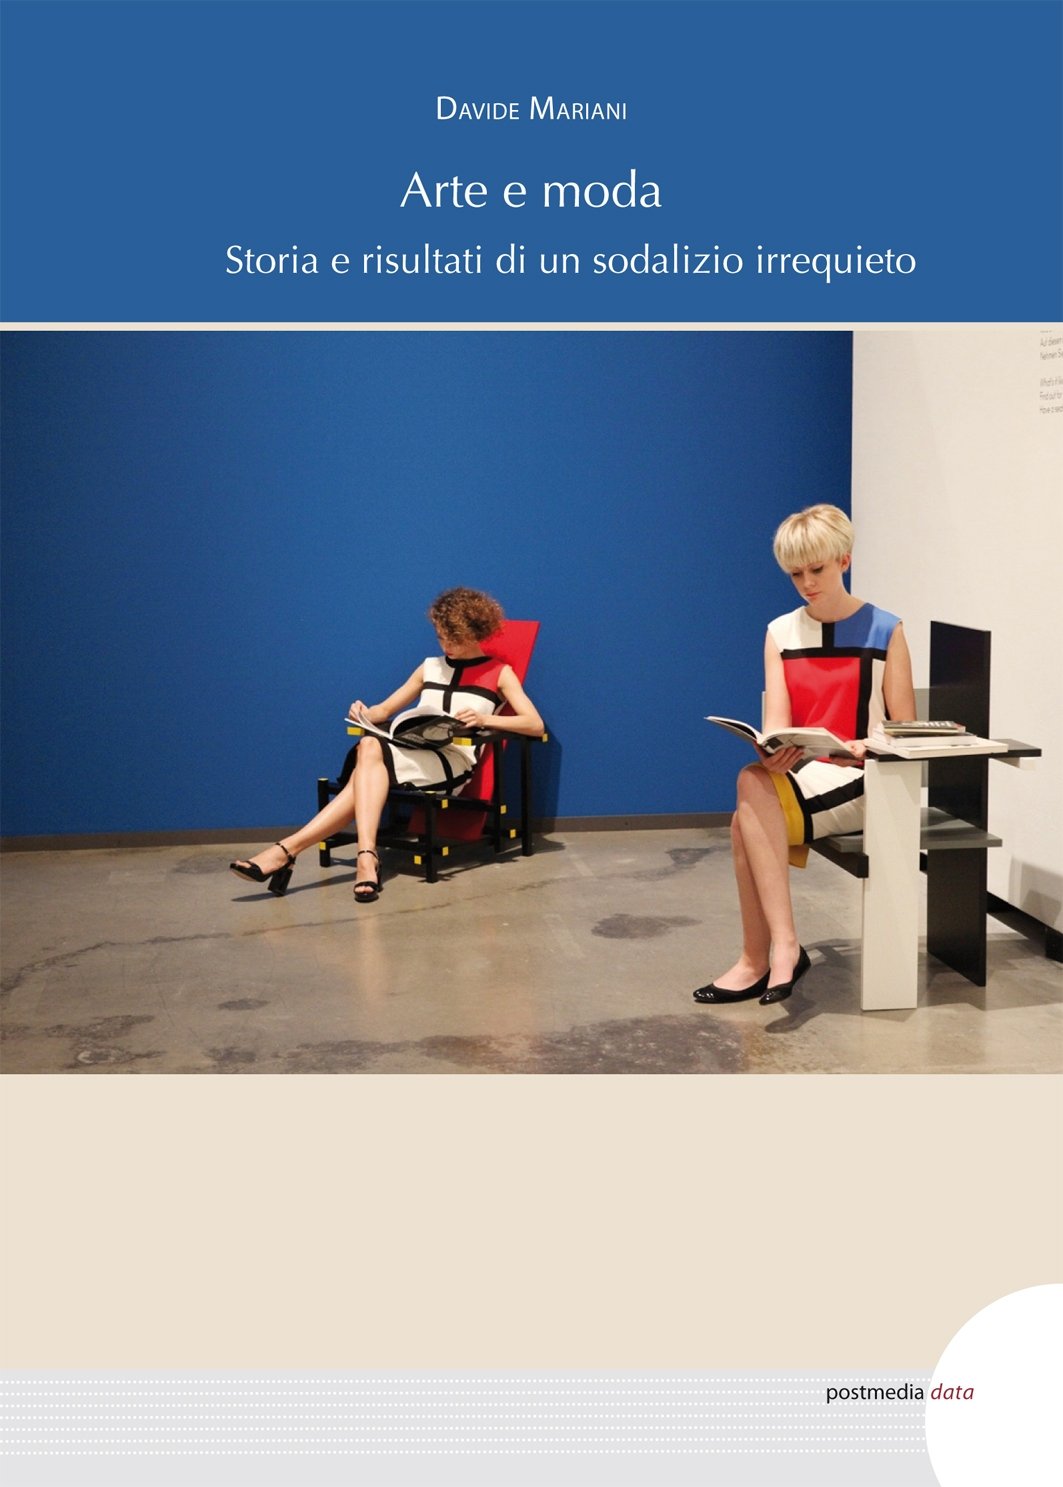 Davide Mariani – Arte e moda. Storia e risultati di un sodalizio irrequieto (Postmedia Books, Milano 2022)